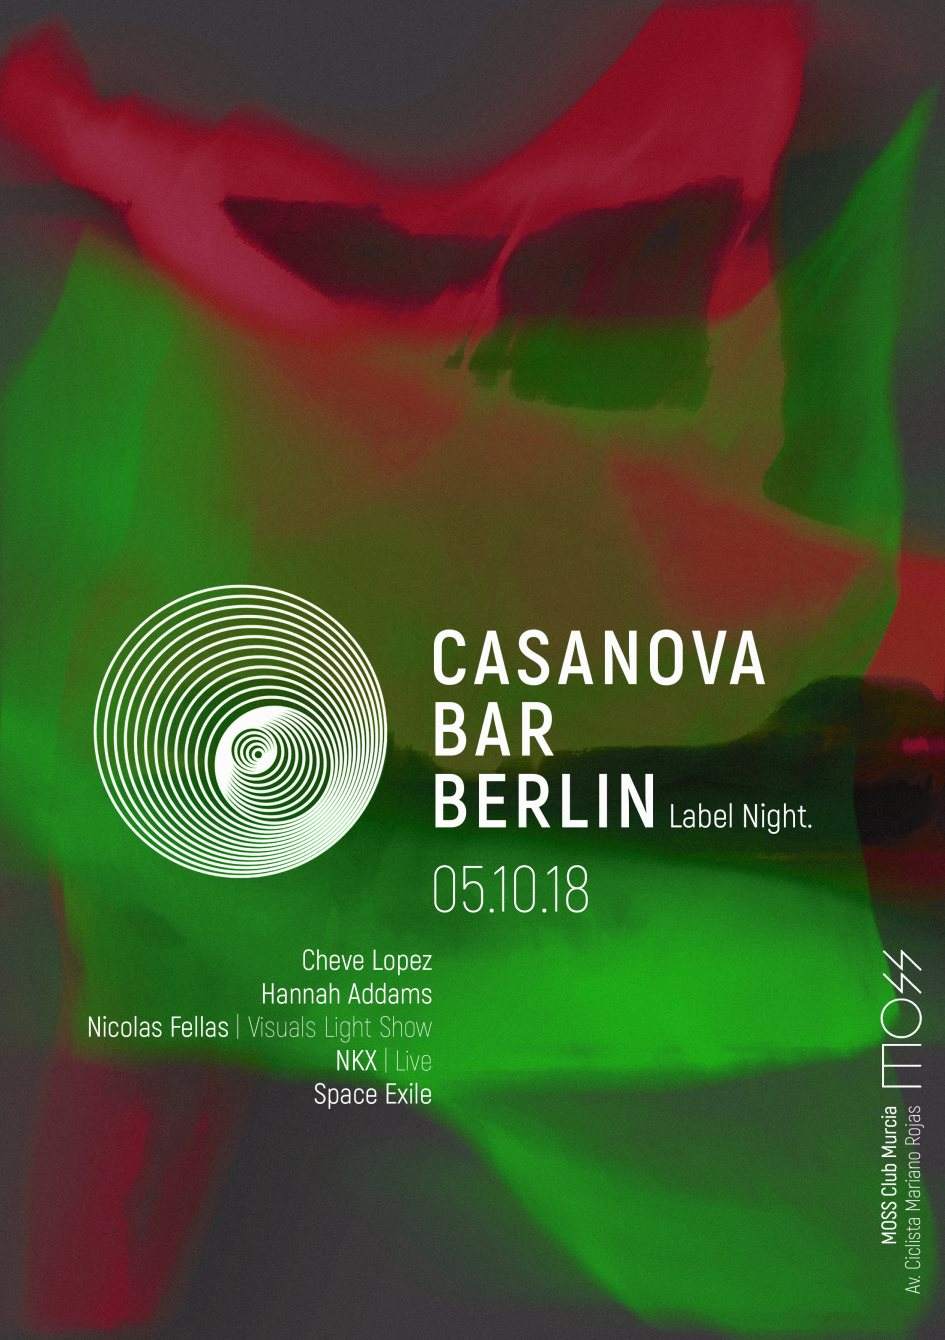 Casanova Bar Berlin / Label Night - フライヤー表